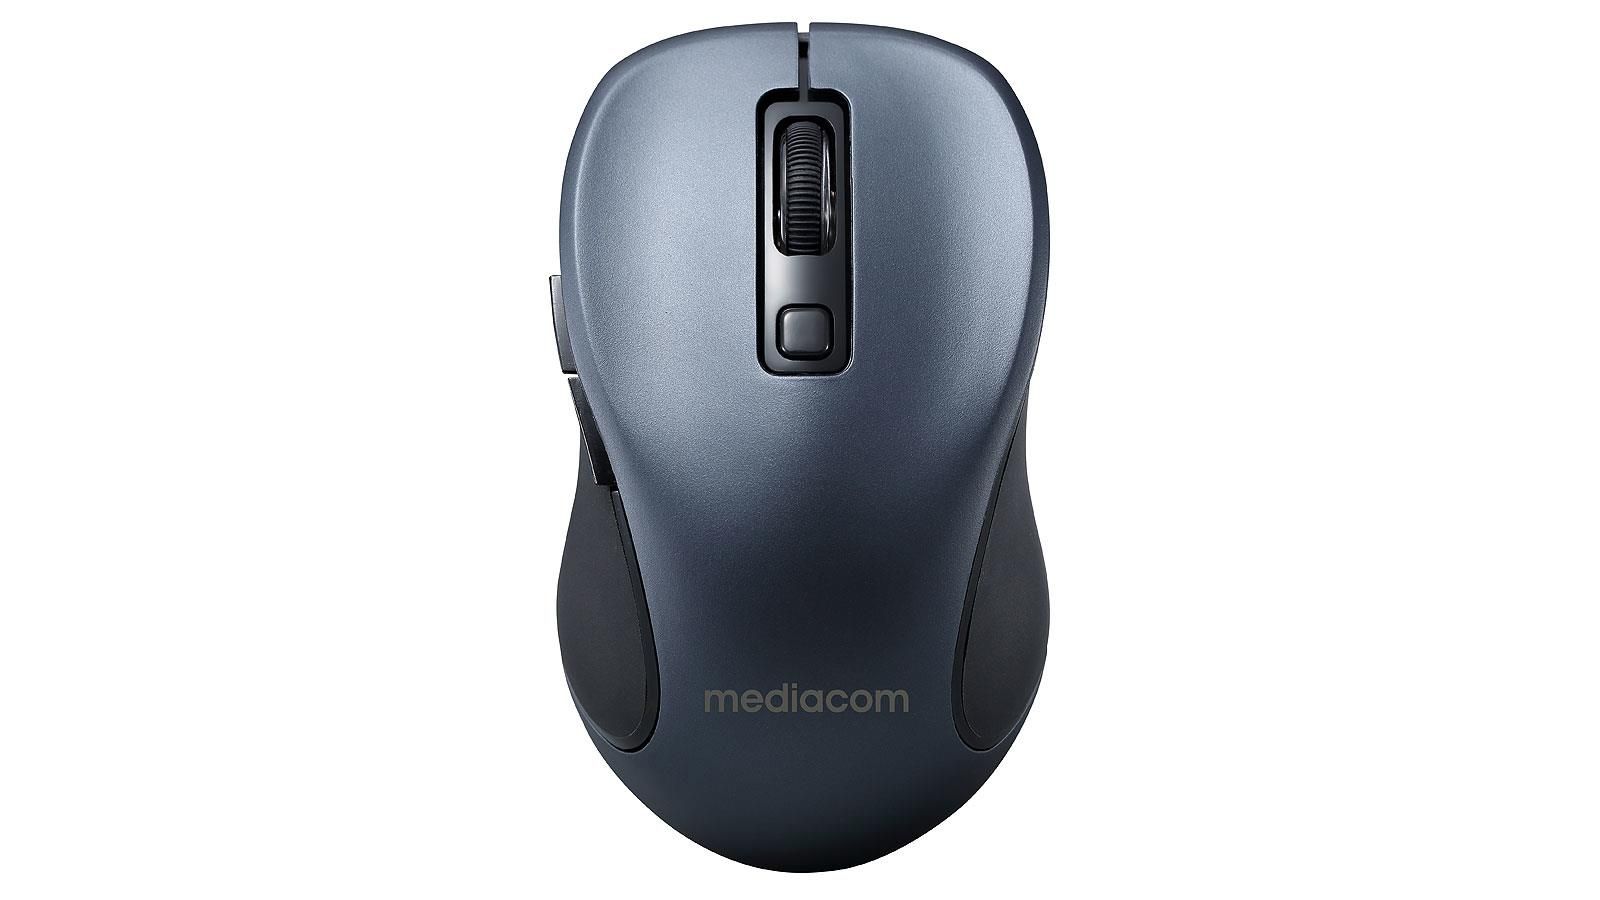 Mediacom Multi Device Ax930